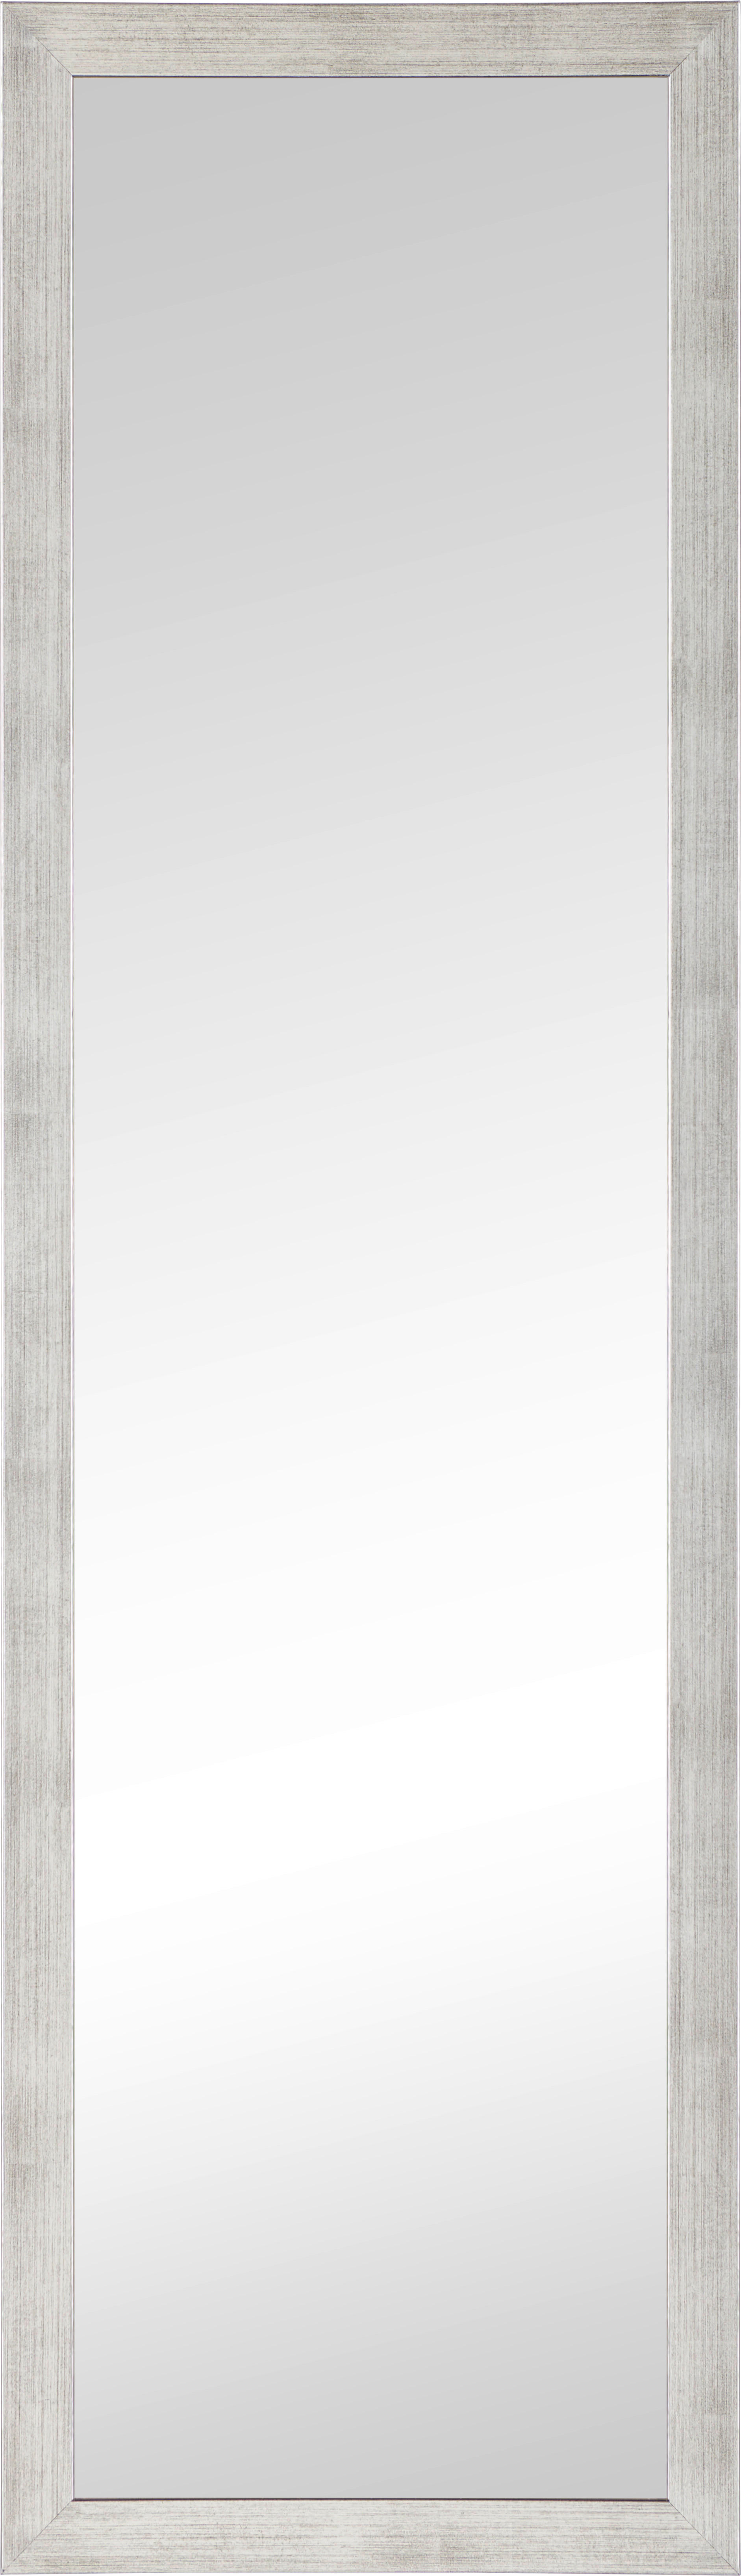 WANDSPIEGEL 36/126/2,5 cm    - Silberfarben, Design, Glas/Holzwerkstoff (36/126/2,5cm) - Carryhome